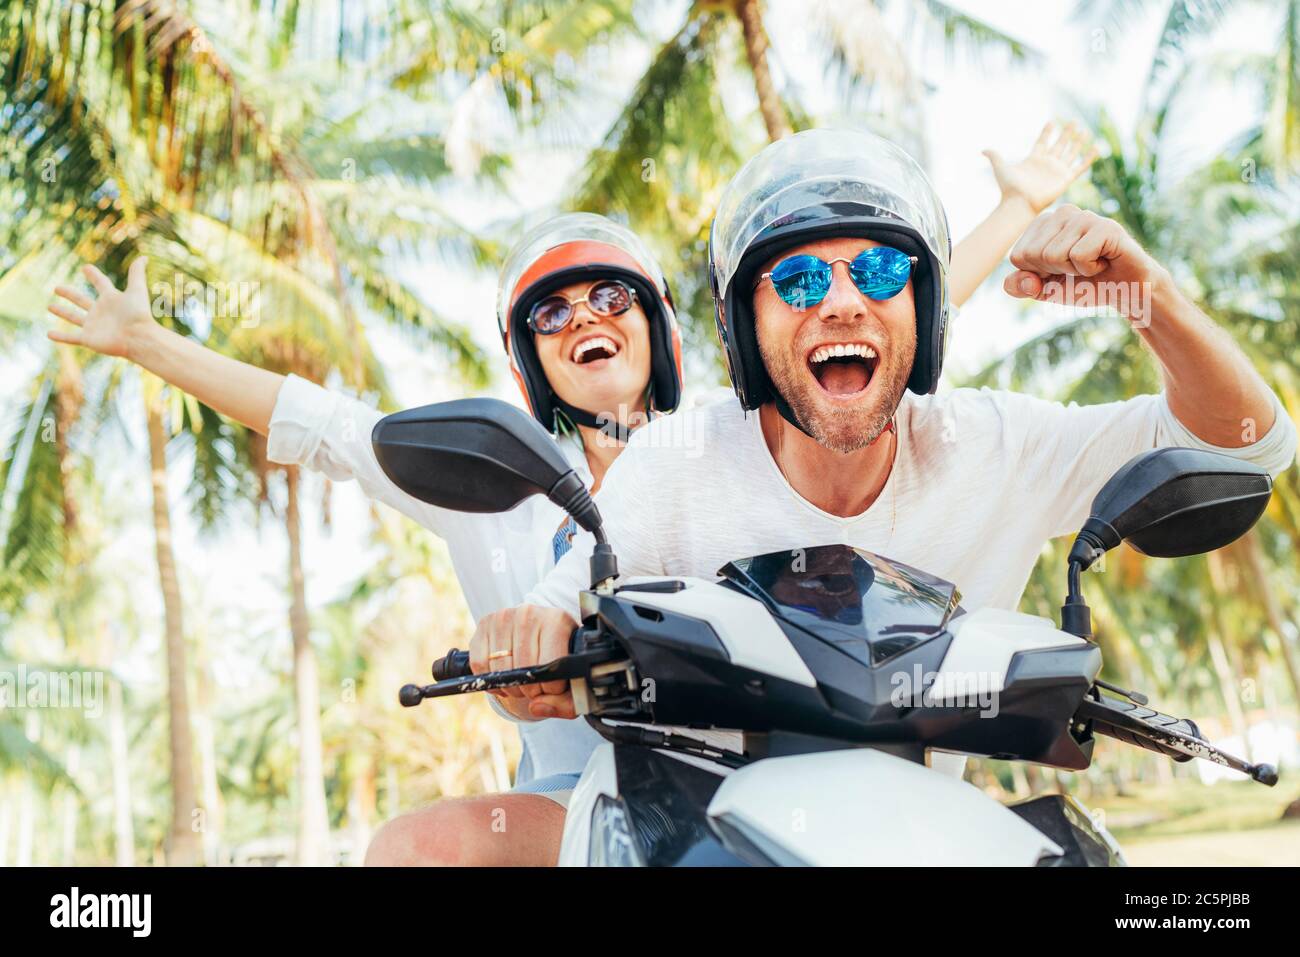 Glücklich lächelndes Paar Reisende Reiten Motorrad Roller in Sicherheitshelmen während tropischen Urlaub unter Palmen auf Ko Samui Insel in Thailand Stockfoto